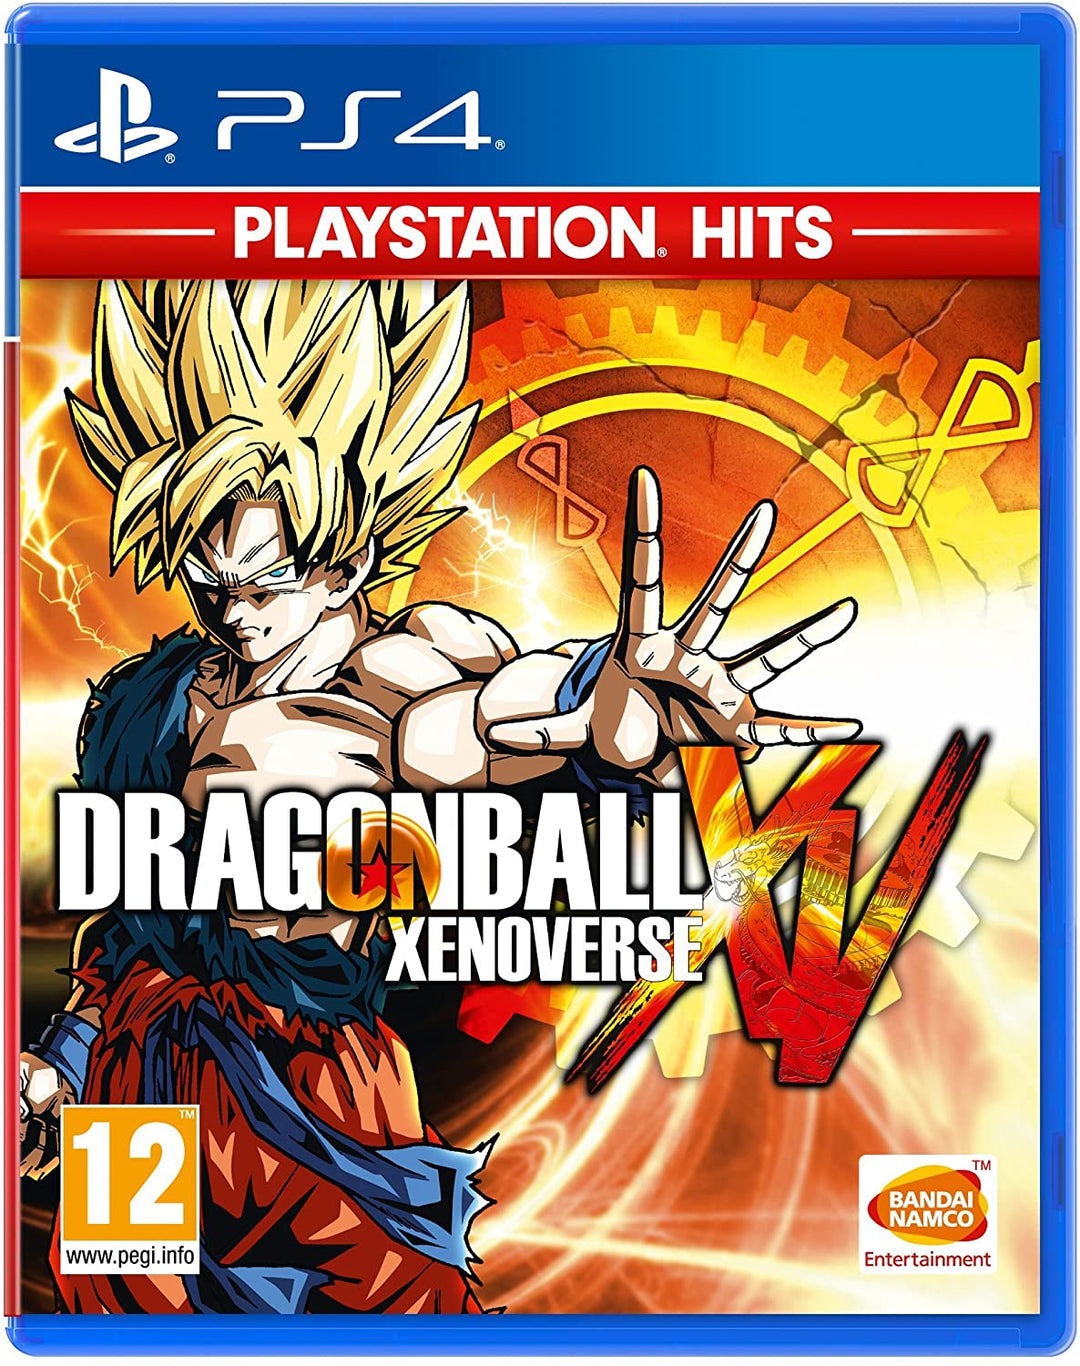 Playstation Hits Dragon Ball Xenoverse (PS4)